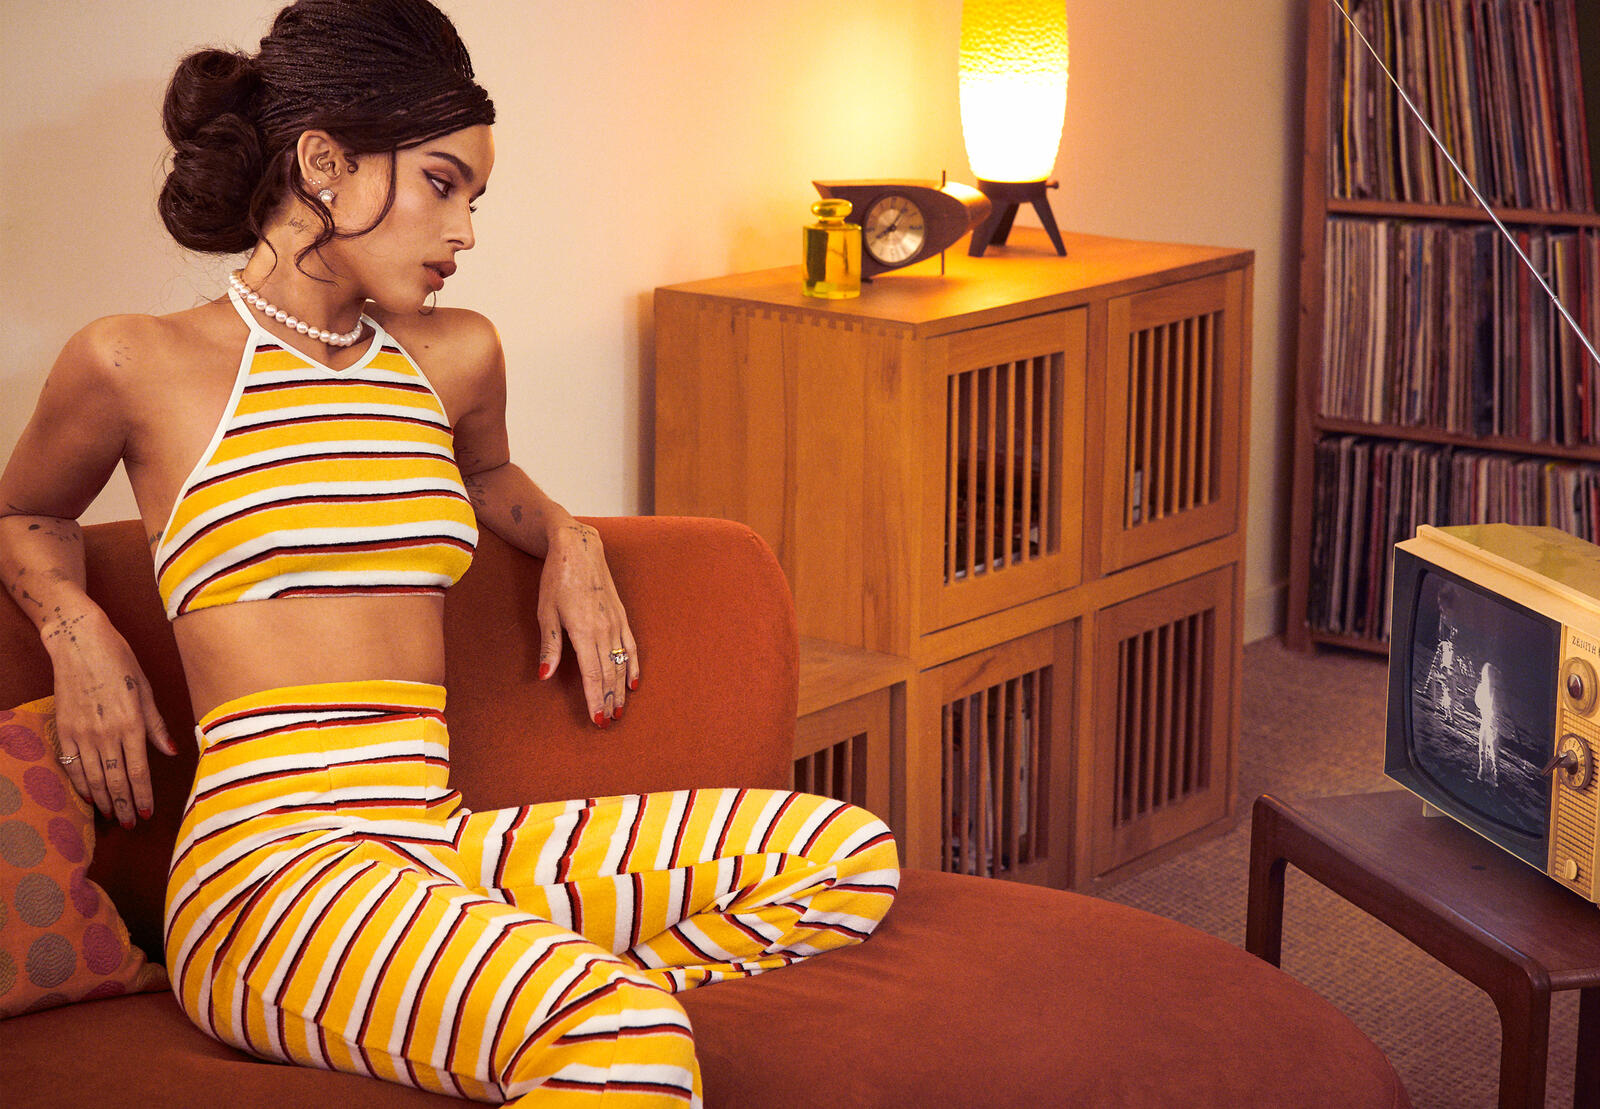 Бесплатное фото Зои Кравиц сидит на диване в желто-белой летней одежде